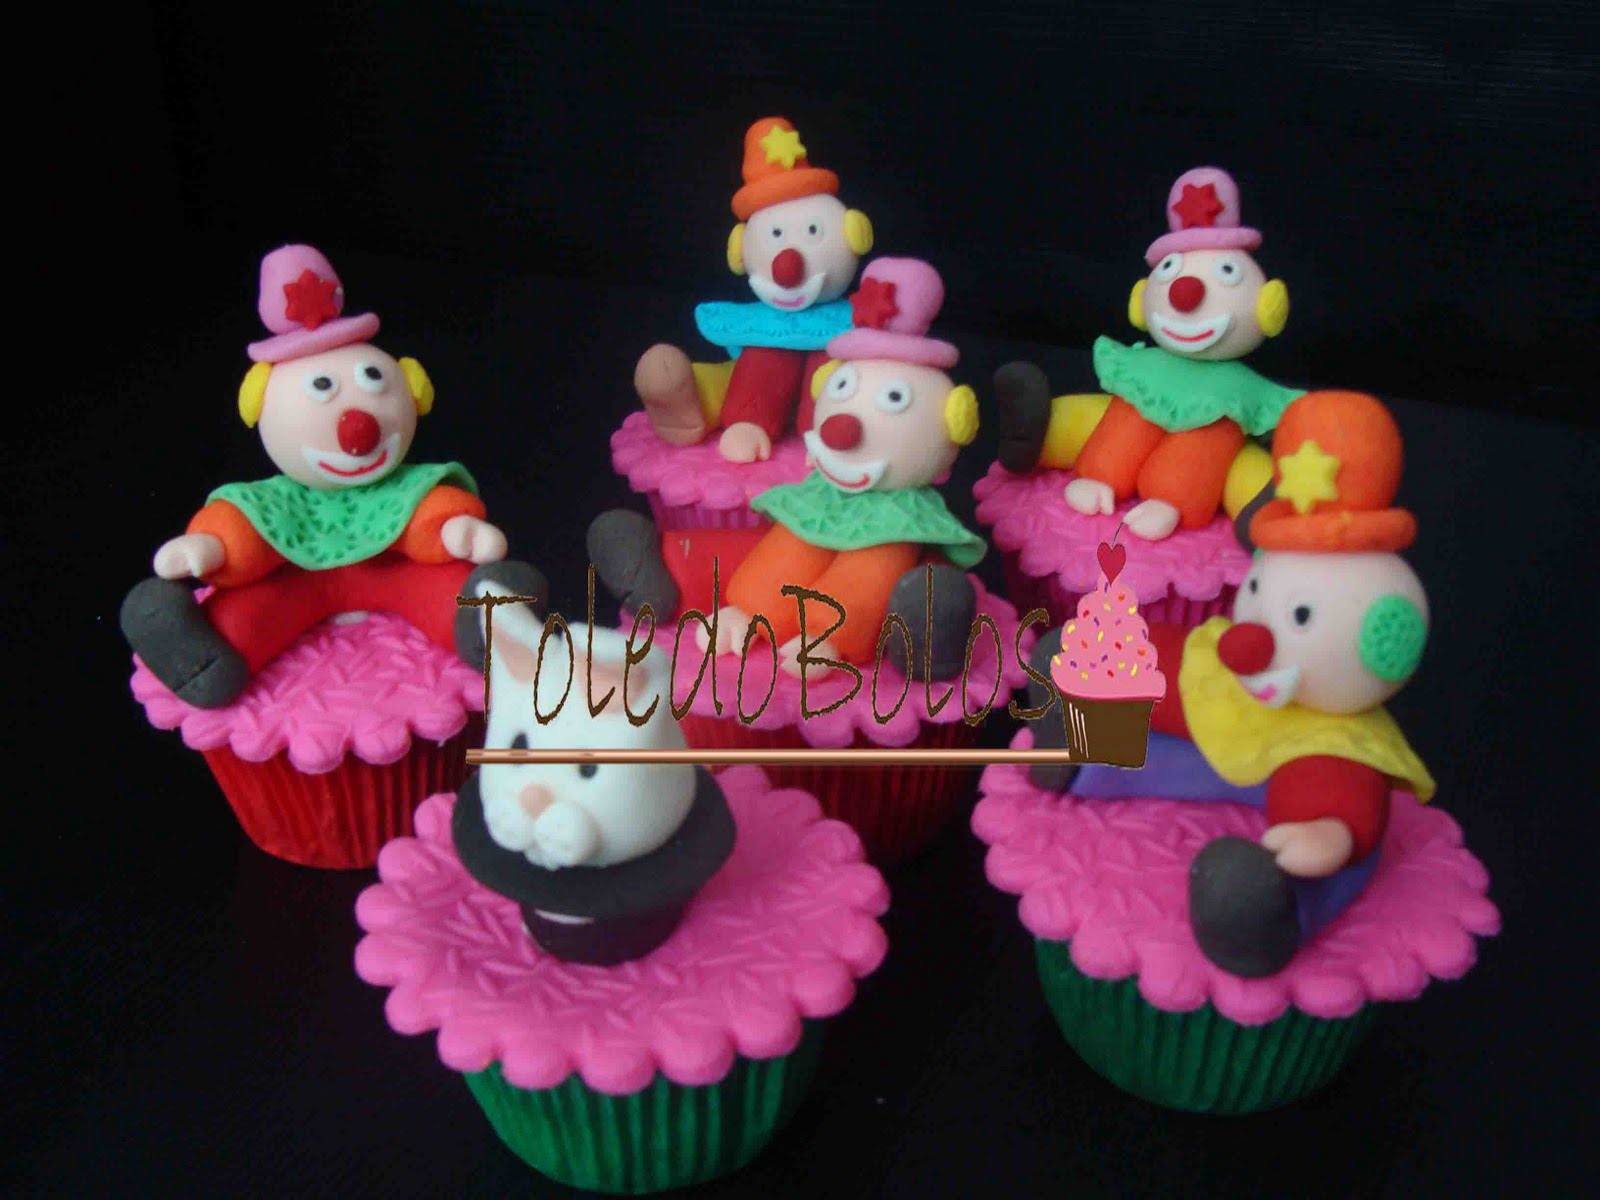 Bolos, Doces, Bem Casados e Guloseimas para todo tipo de festa ou  evento!!!!!: Cupcakes e bolo tema Carros. #cupcakes #chocolate #carros  #festacarros #festainfantil #chocolate #bolos